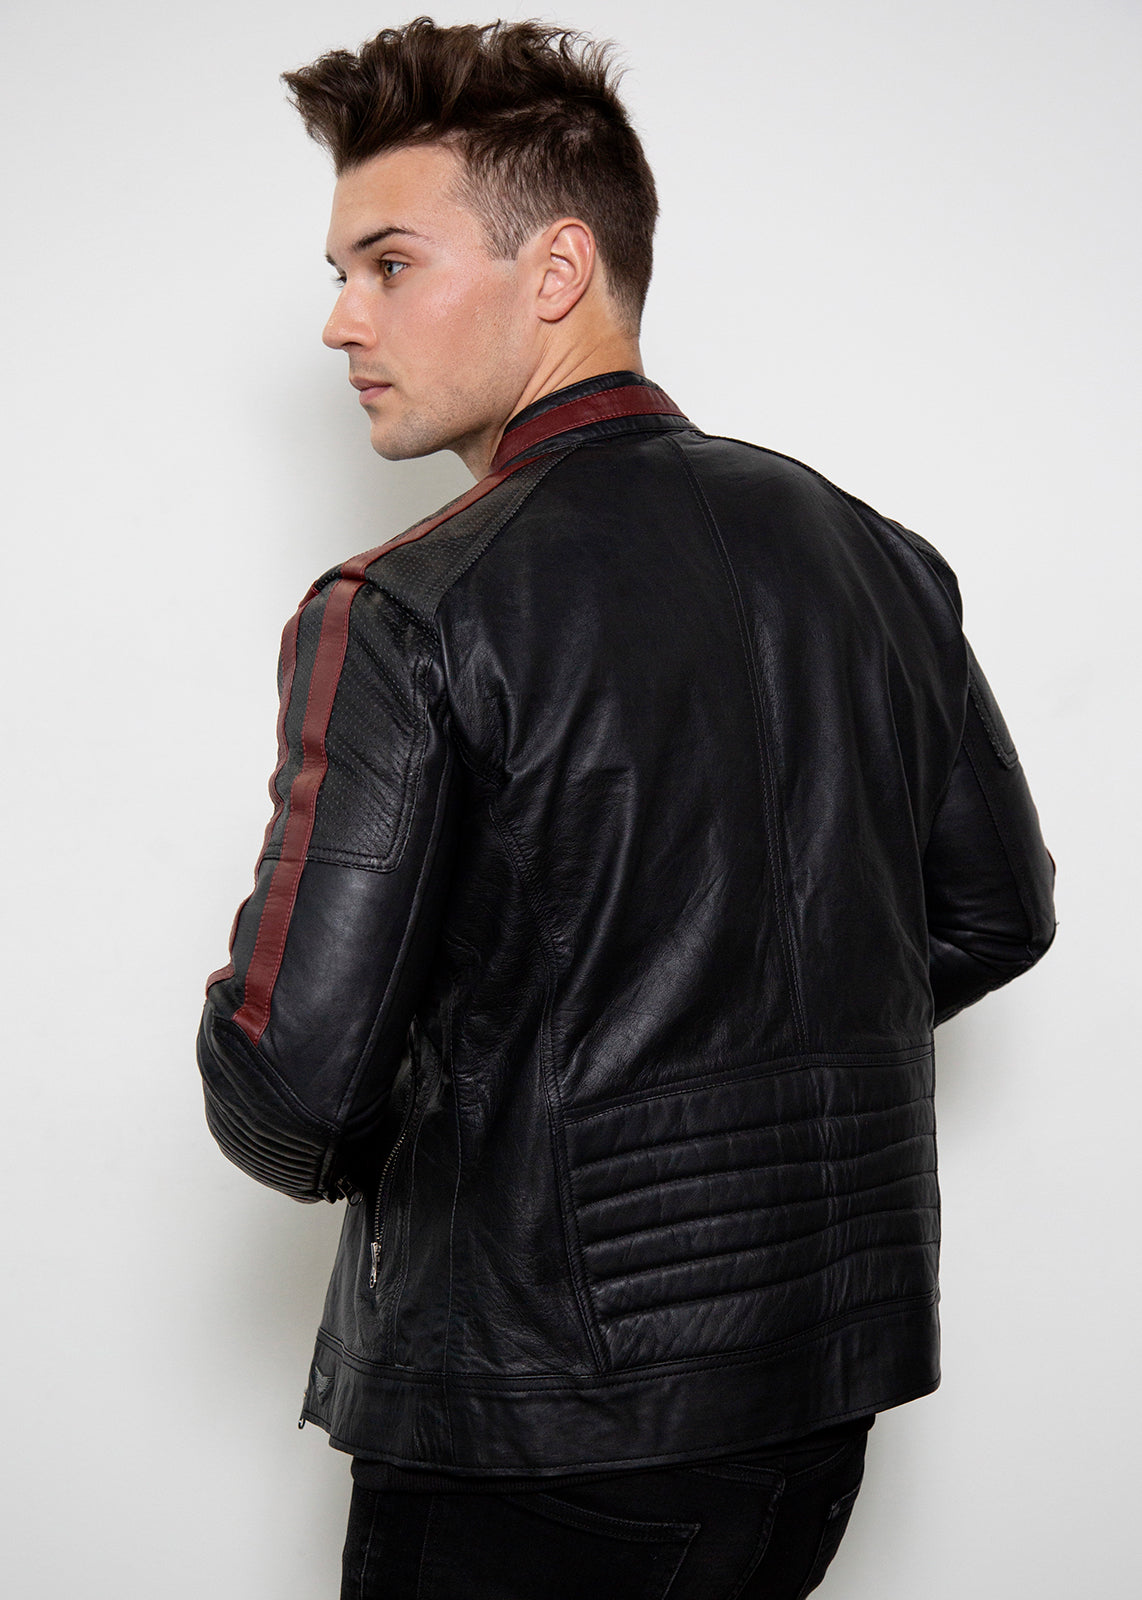 n7 black biker leather jacket mass effect commander shepard